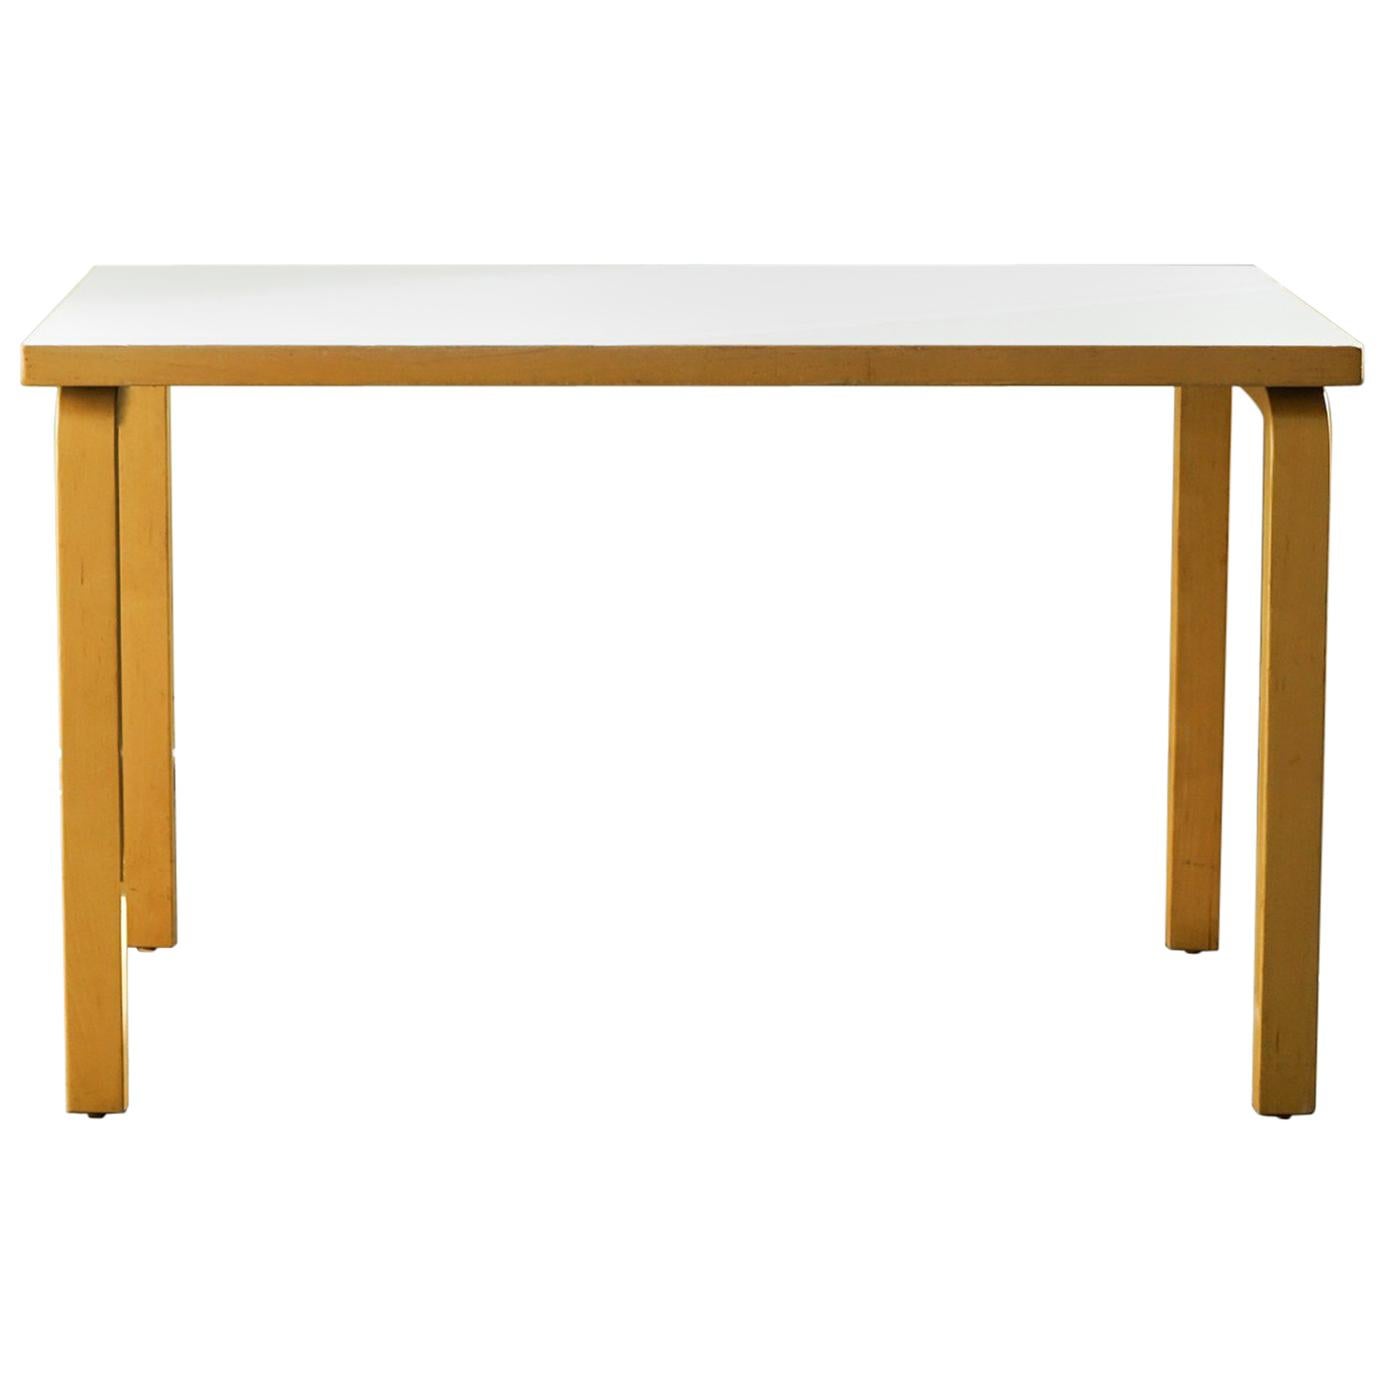 Table Model 80A White Laminated, Alvar Aalto for Artek, Finland at 